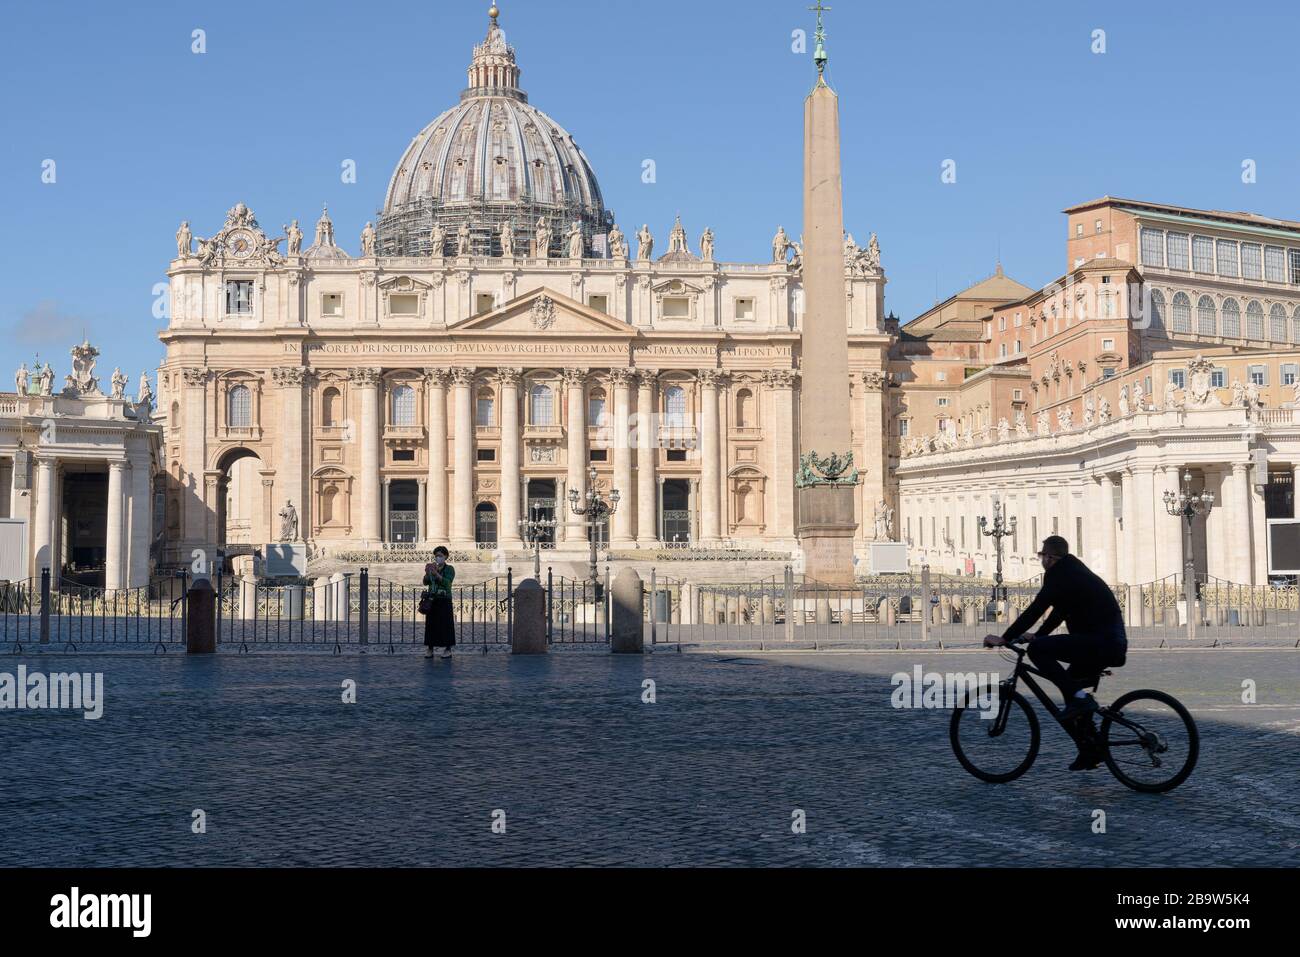 ROME, ITALIE - 12 mars 2020: Un touriste prend un selfie devant la place Saint Pierre vide, Vatican, Italie. Suite à la pandémie de coronavirus, Italie Banque D'Images